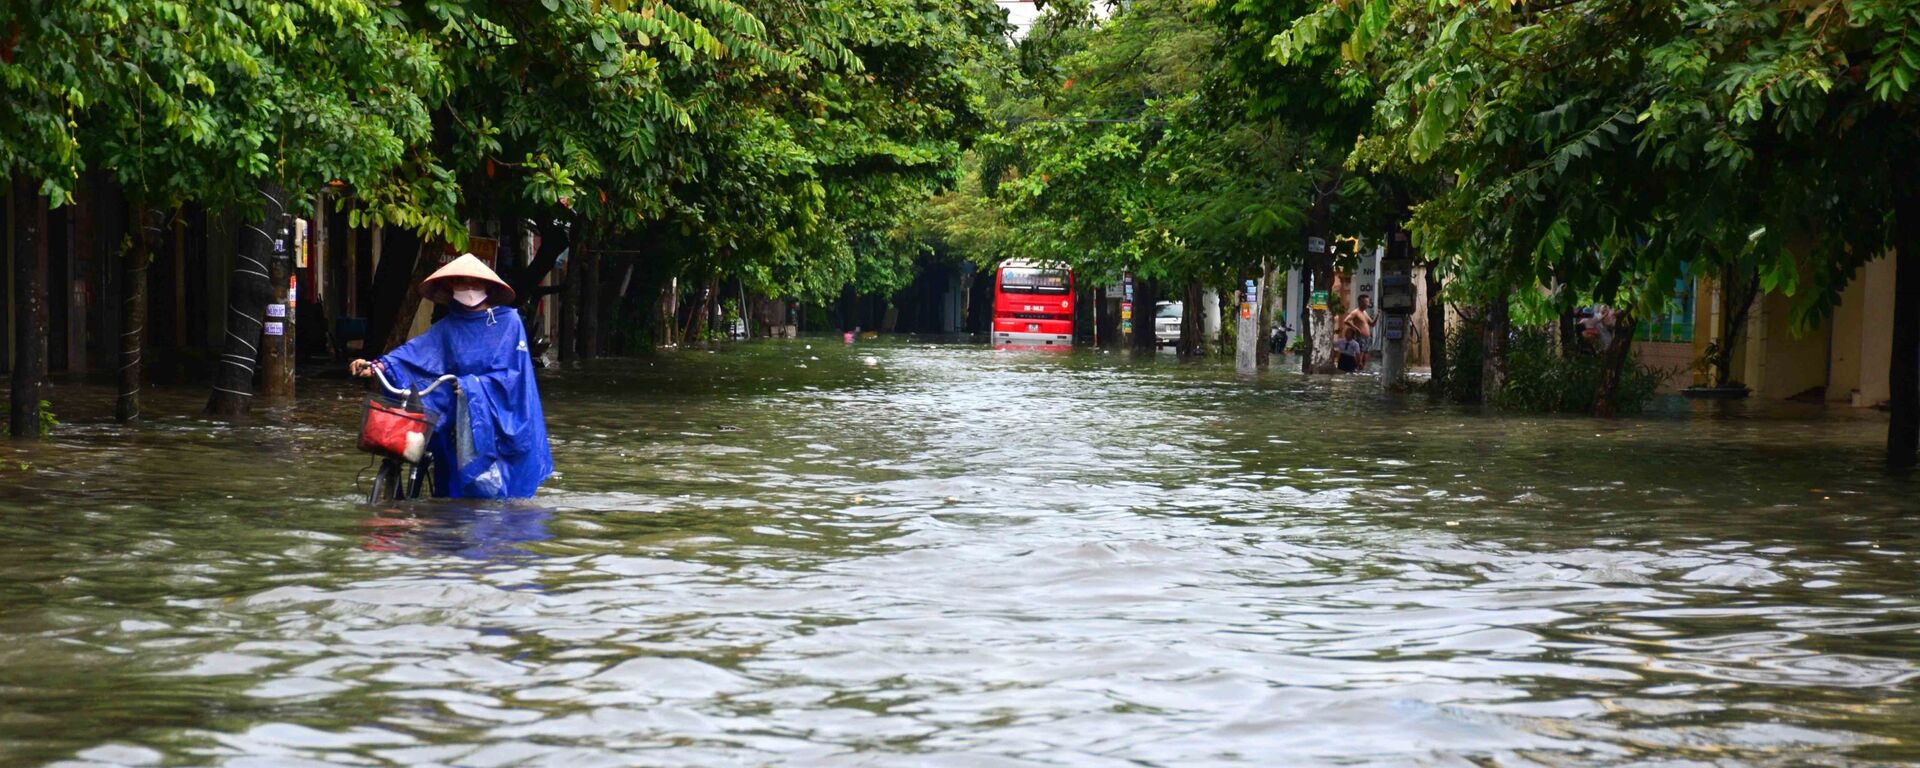 Mưa lớn khiến phố Máy Tơ, thành phố Nam Định bị ngập sâu trong nước, các phương tiện di chuyển khó khăn - Sputnik Việt Nam, 1920, 16.10.2021